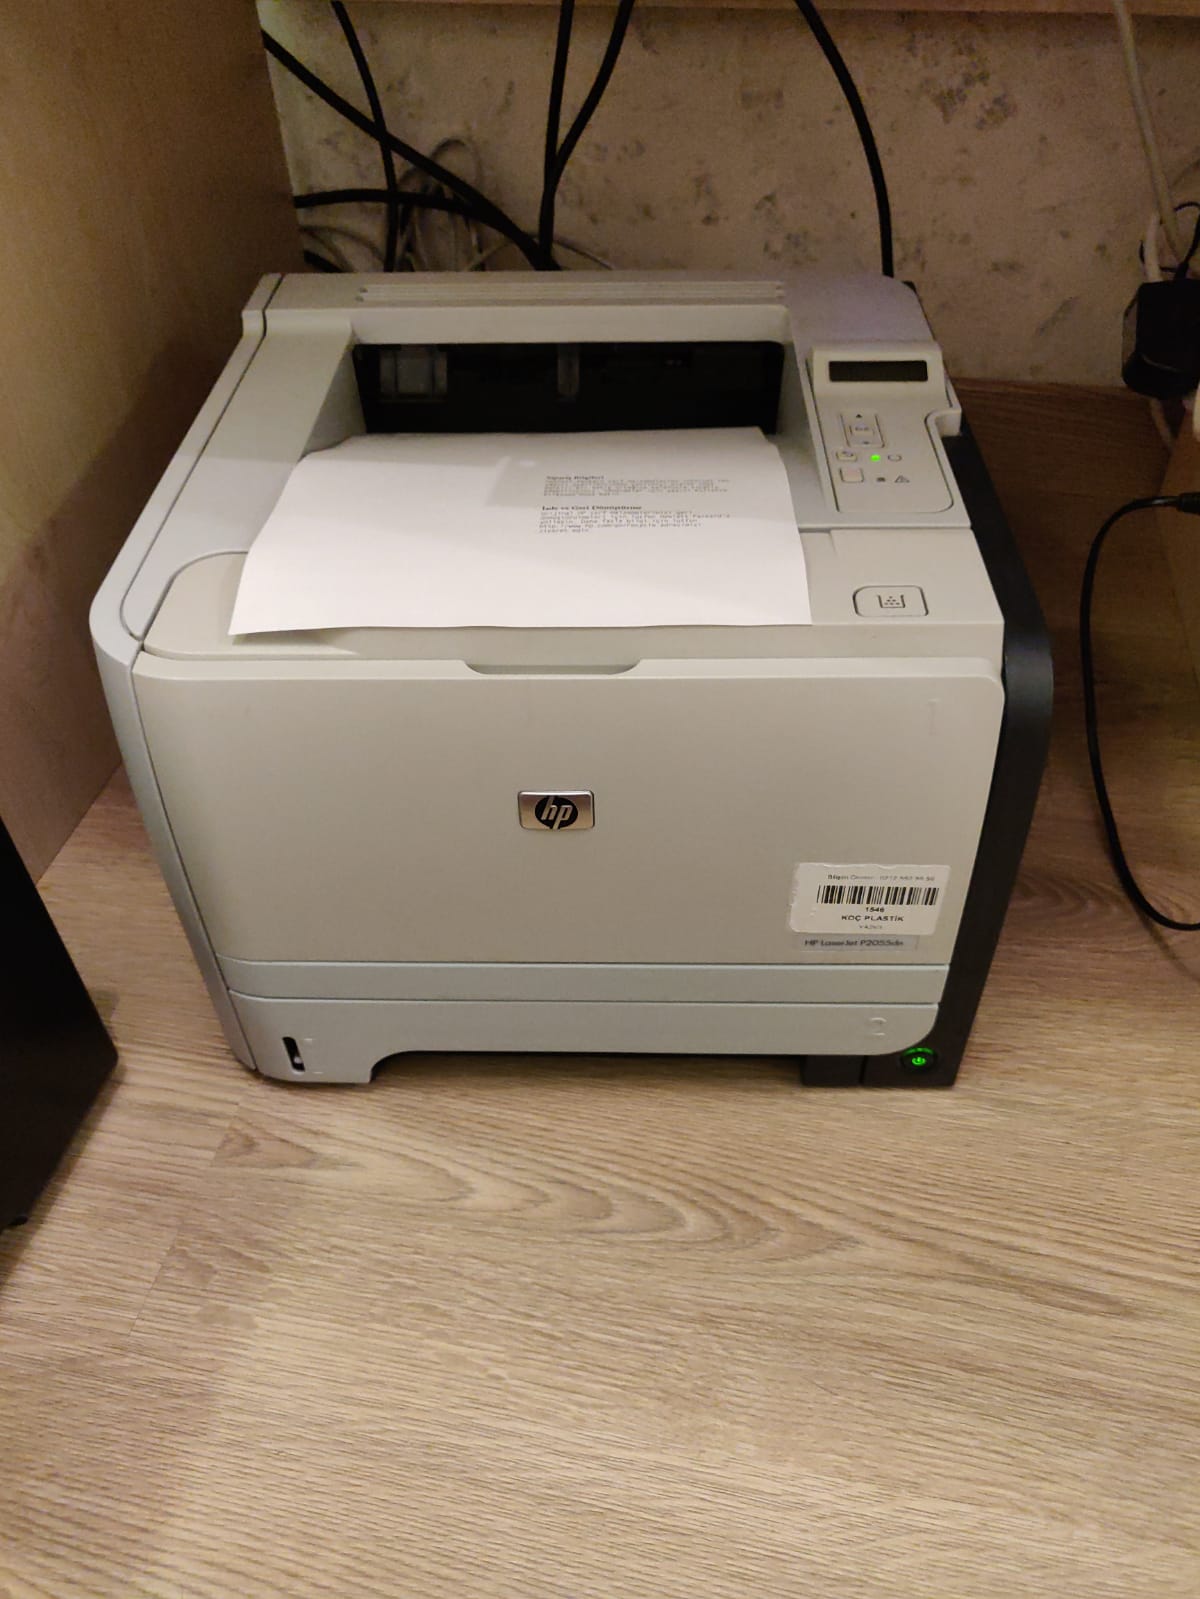 Satılık HP P2055DN LaserJet Printer Yazıcı Dublex Tonerli | DonanımHaber  Forum